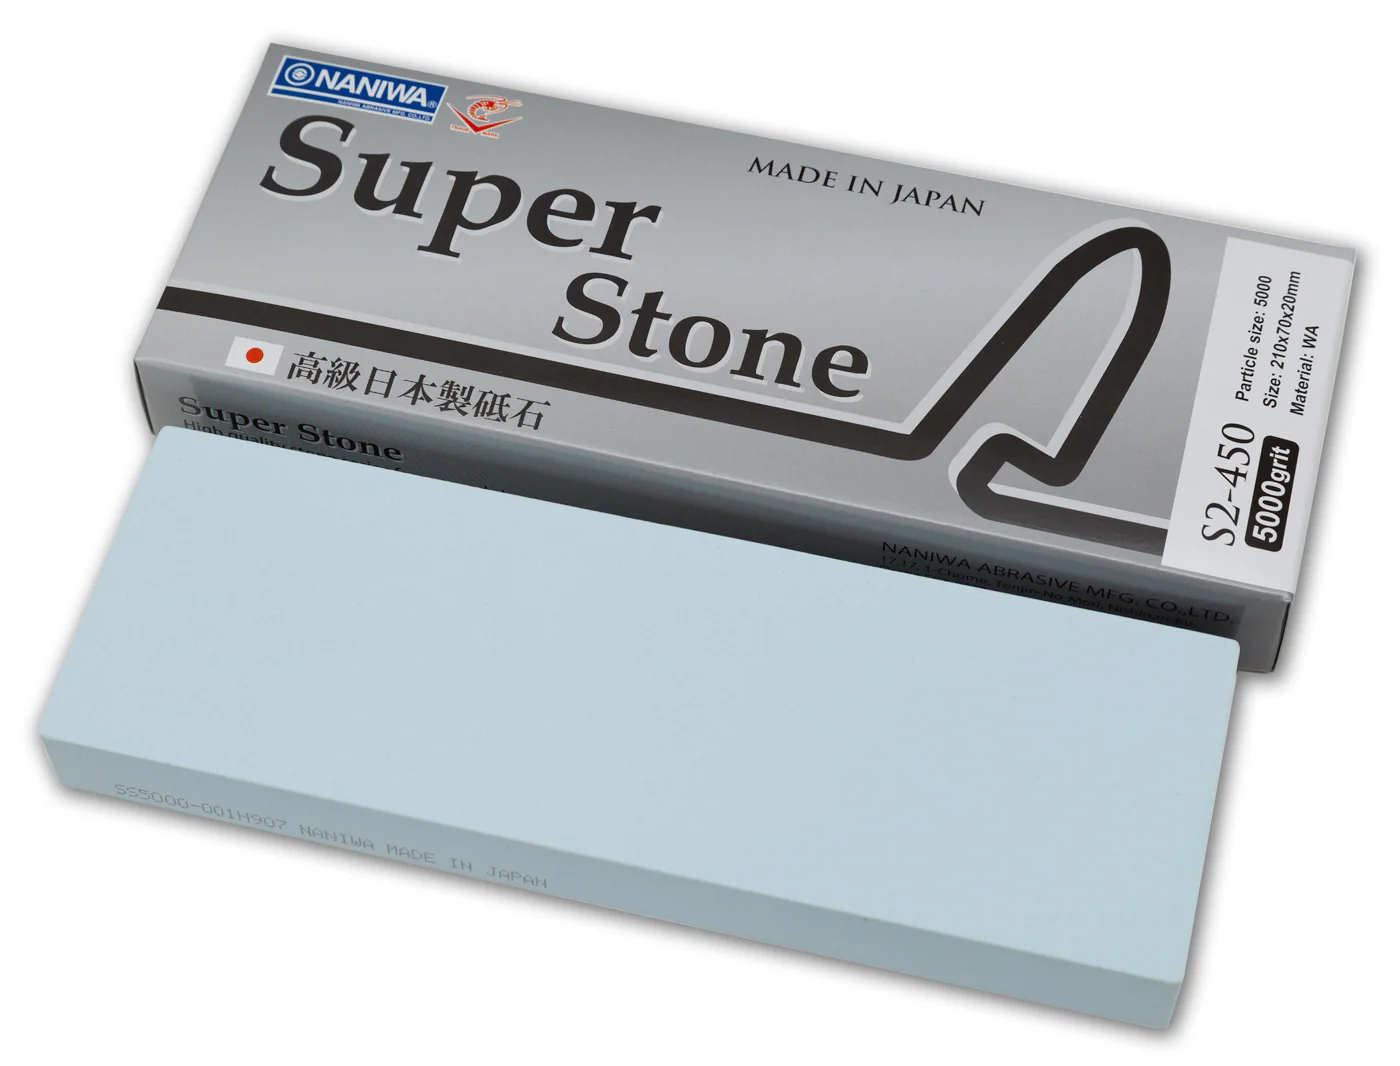 „Mistrzostwo Ostrzenia: Wszystko, co Musisz Wiedzieć o Kamieniach Naniwa Super Stone”